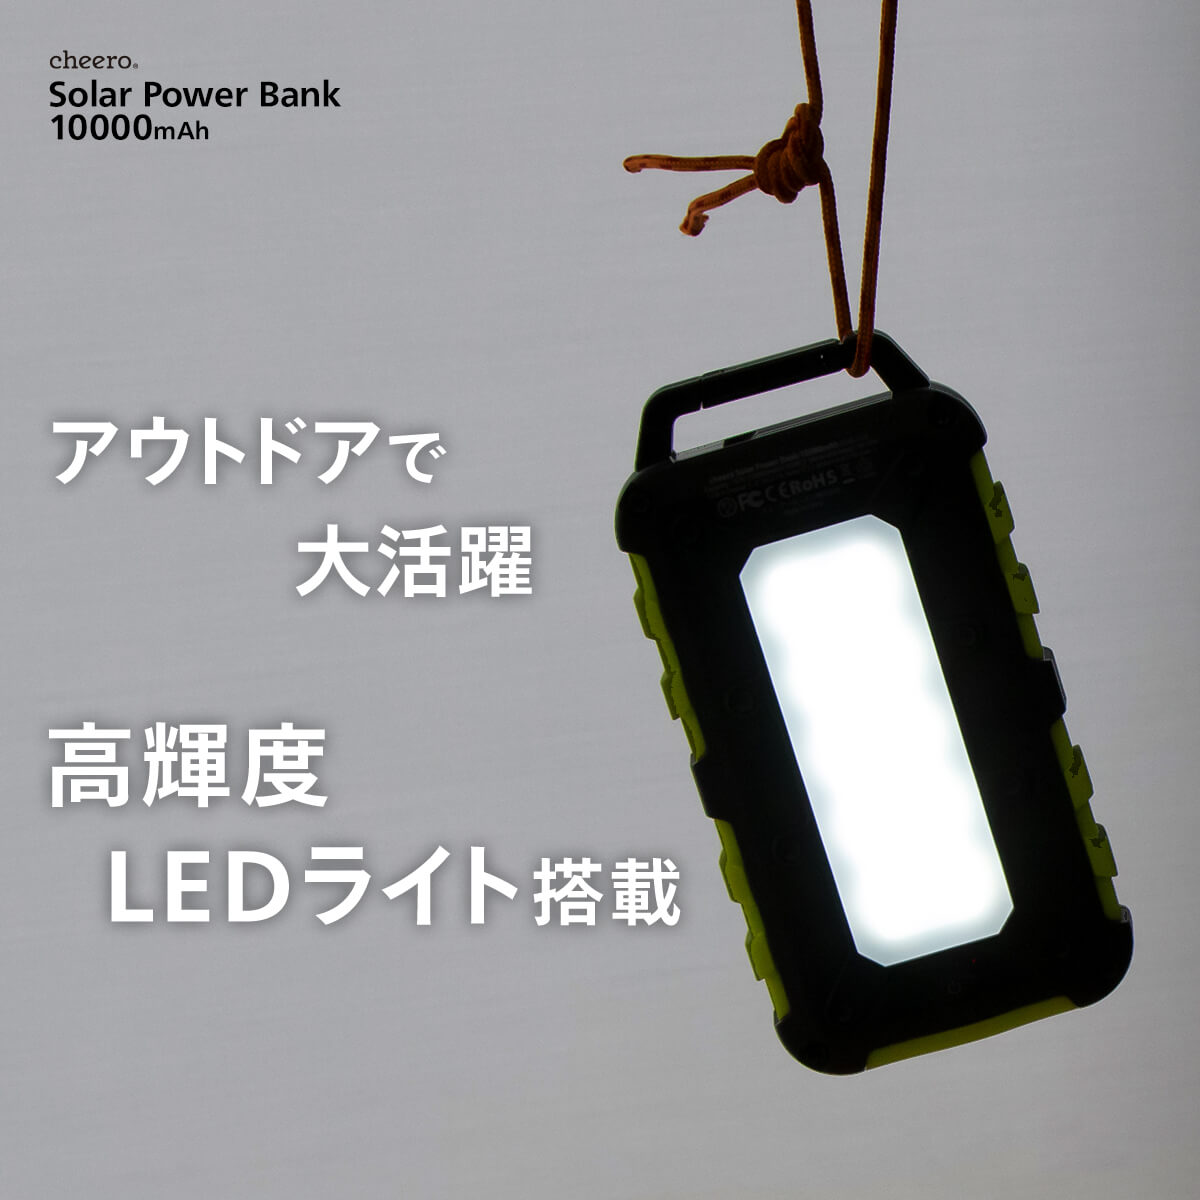 【販売終了】cheero Solar Power Bank 10000mAh